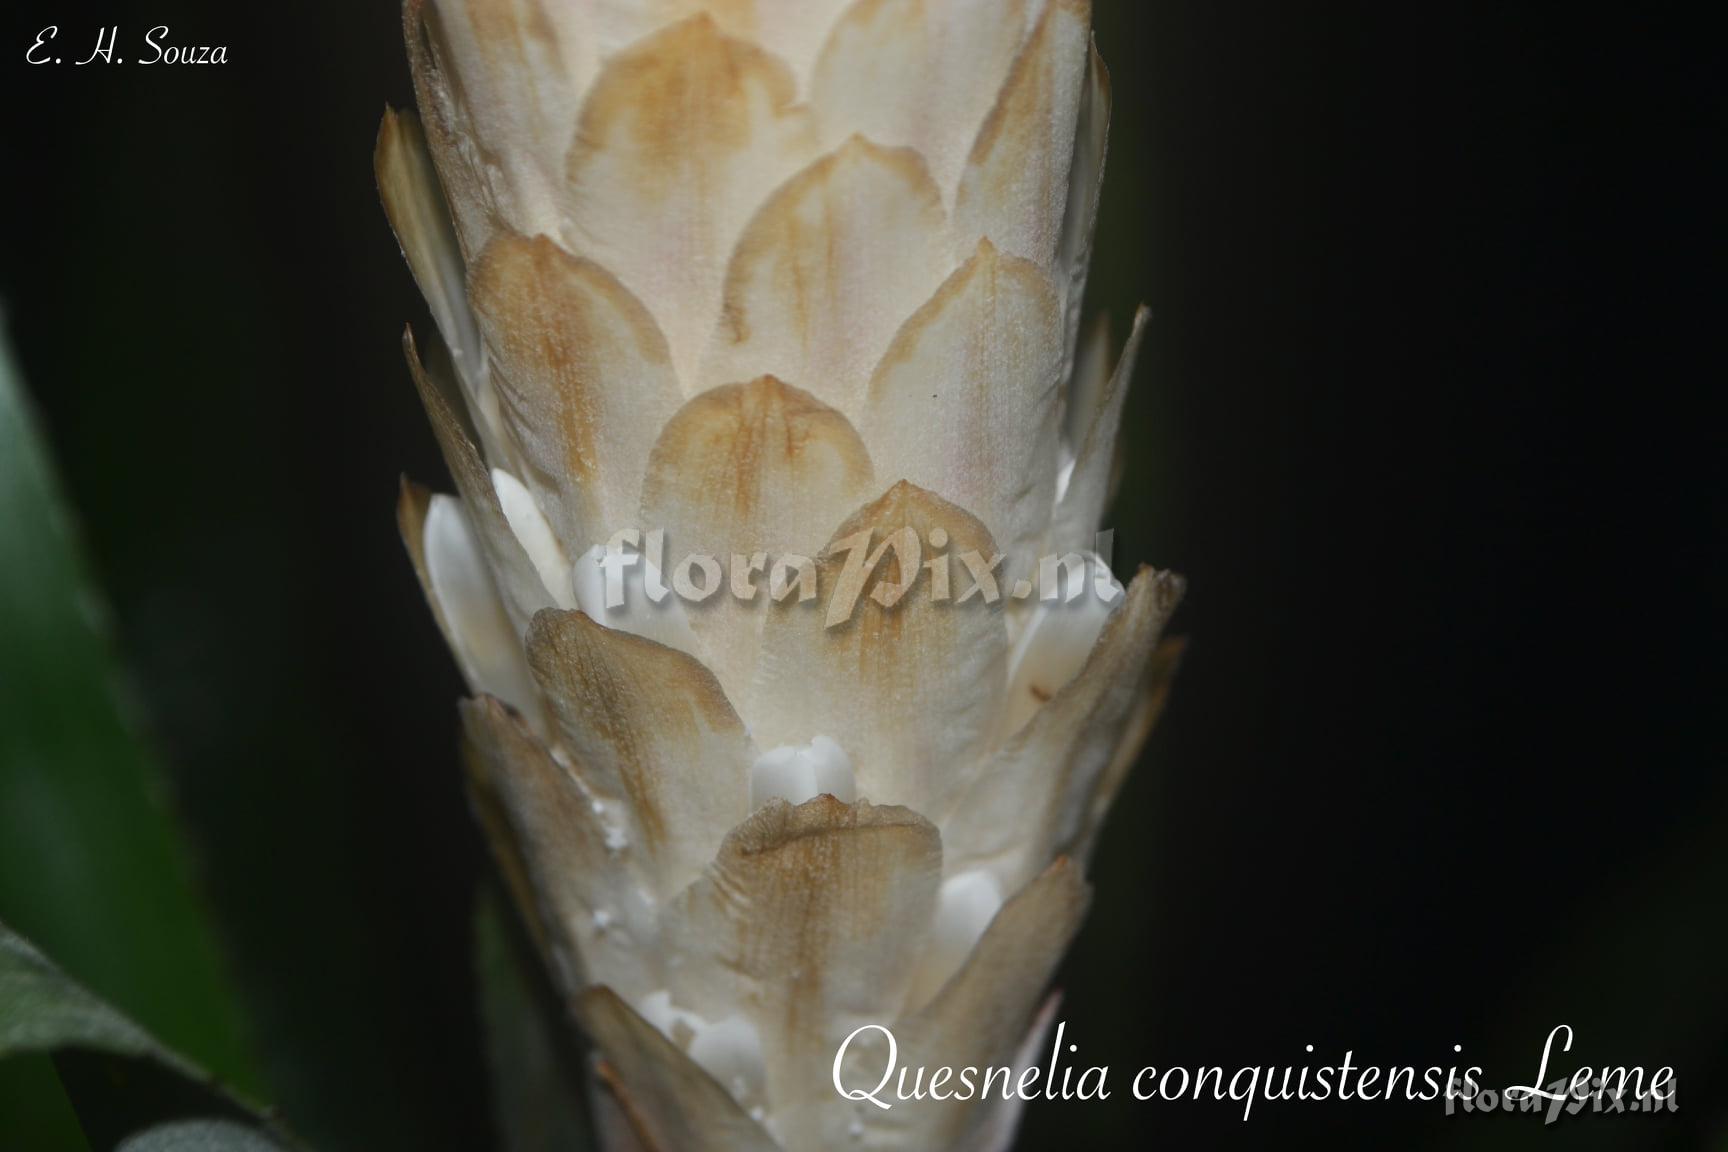 Quesnelia conquistensis